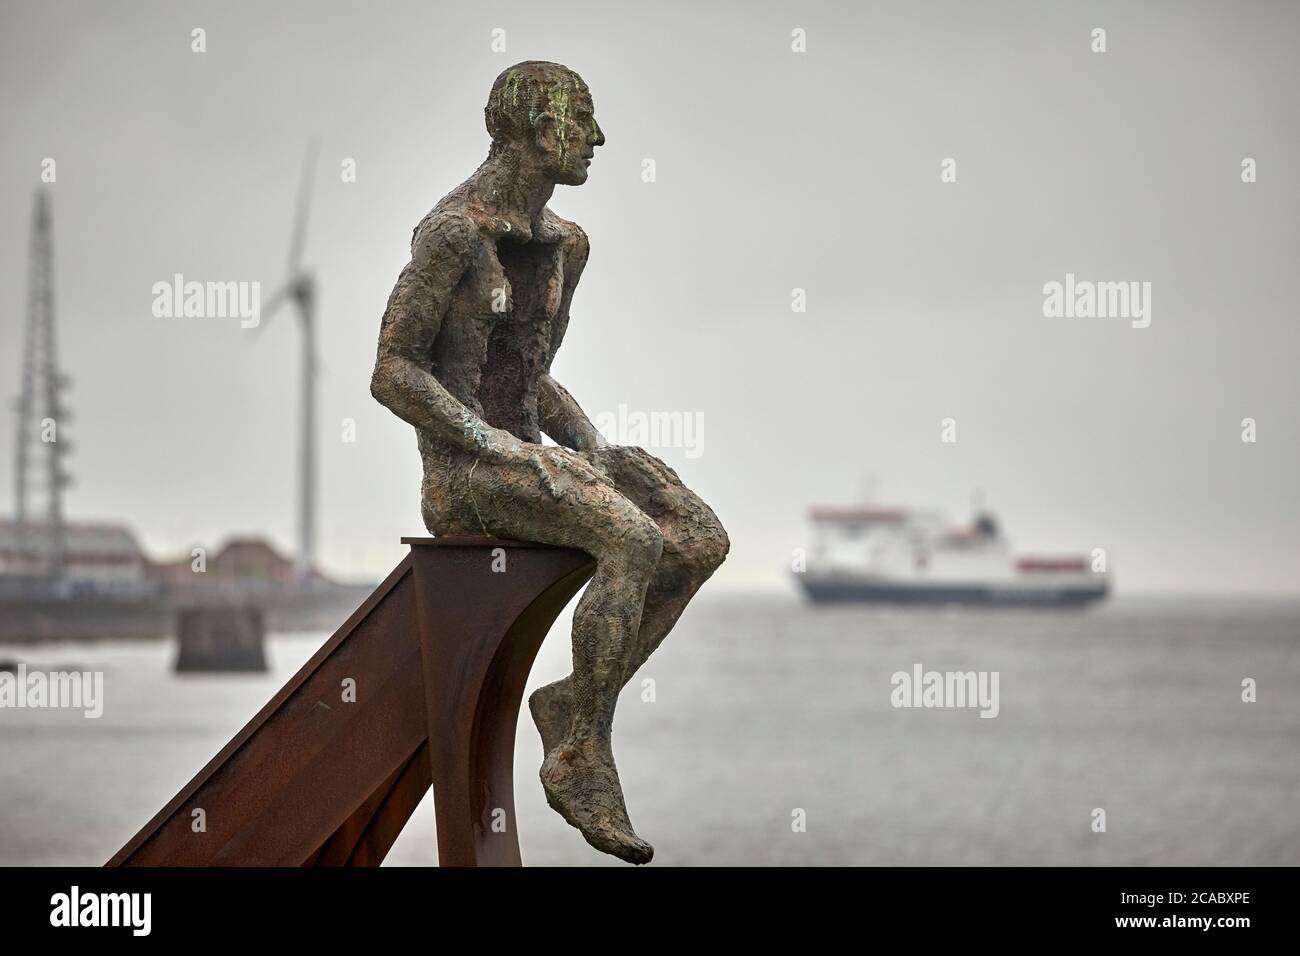 Heysham Skulptur von SCHIFF und zwei Figuren in Half Moon Bay von der Künstlerin Anna Gillespie in der Nähe des Hafens als Isle OF MAN DAMPFPAKET FIRMA Fähre arriv Stockfoto